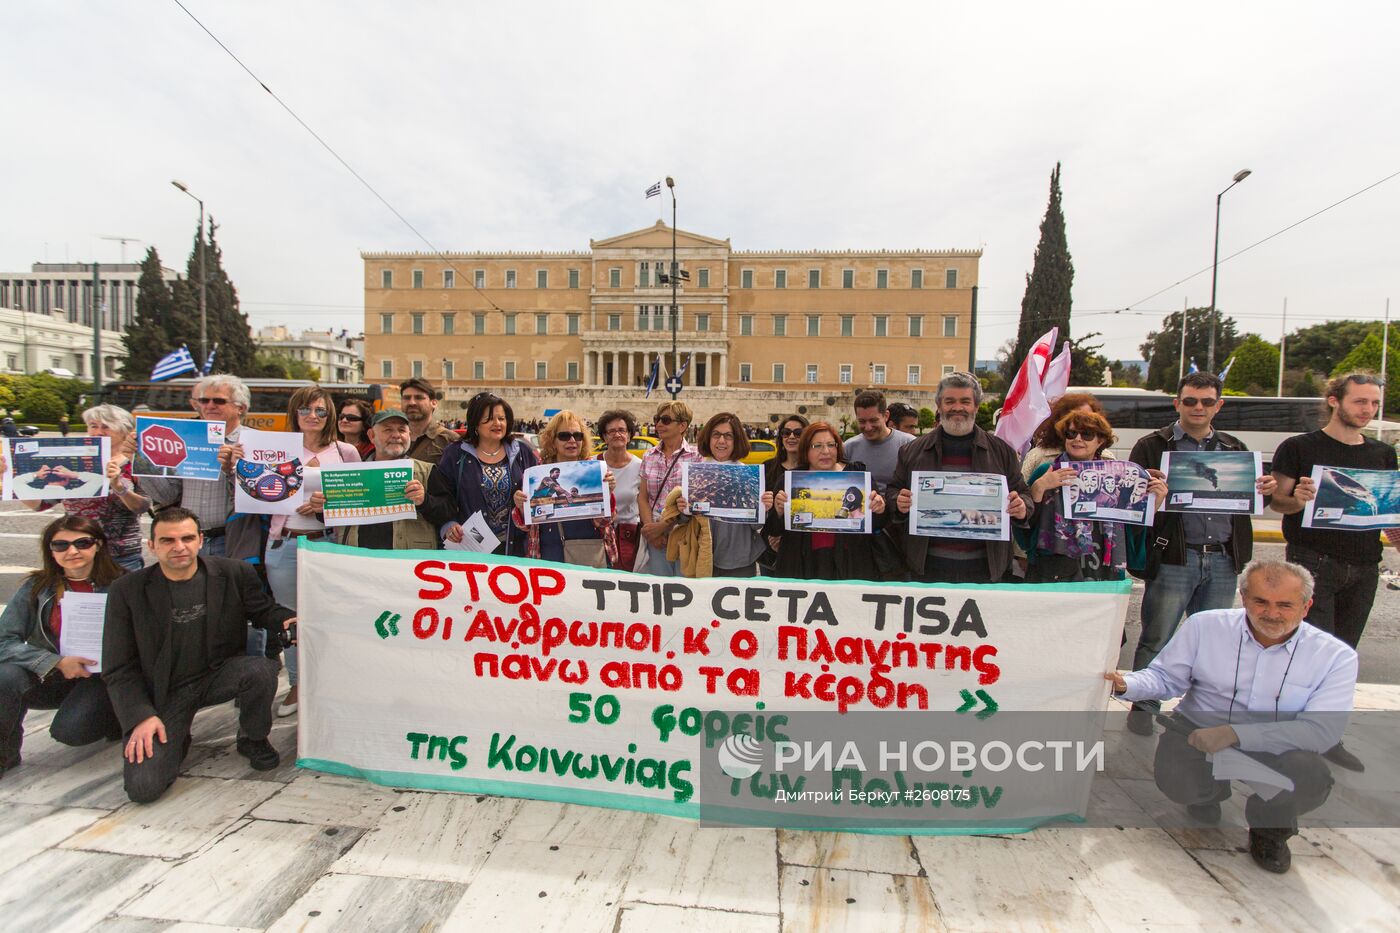 Акции протеста против соглашений о трансатлантической торговле в Европе